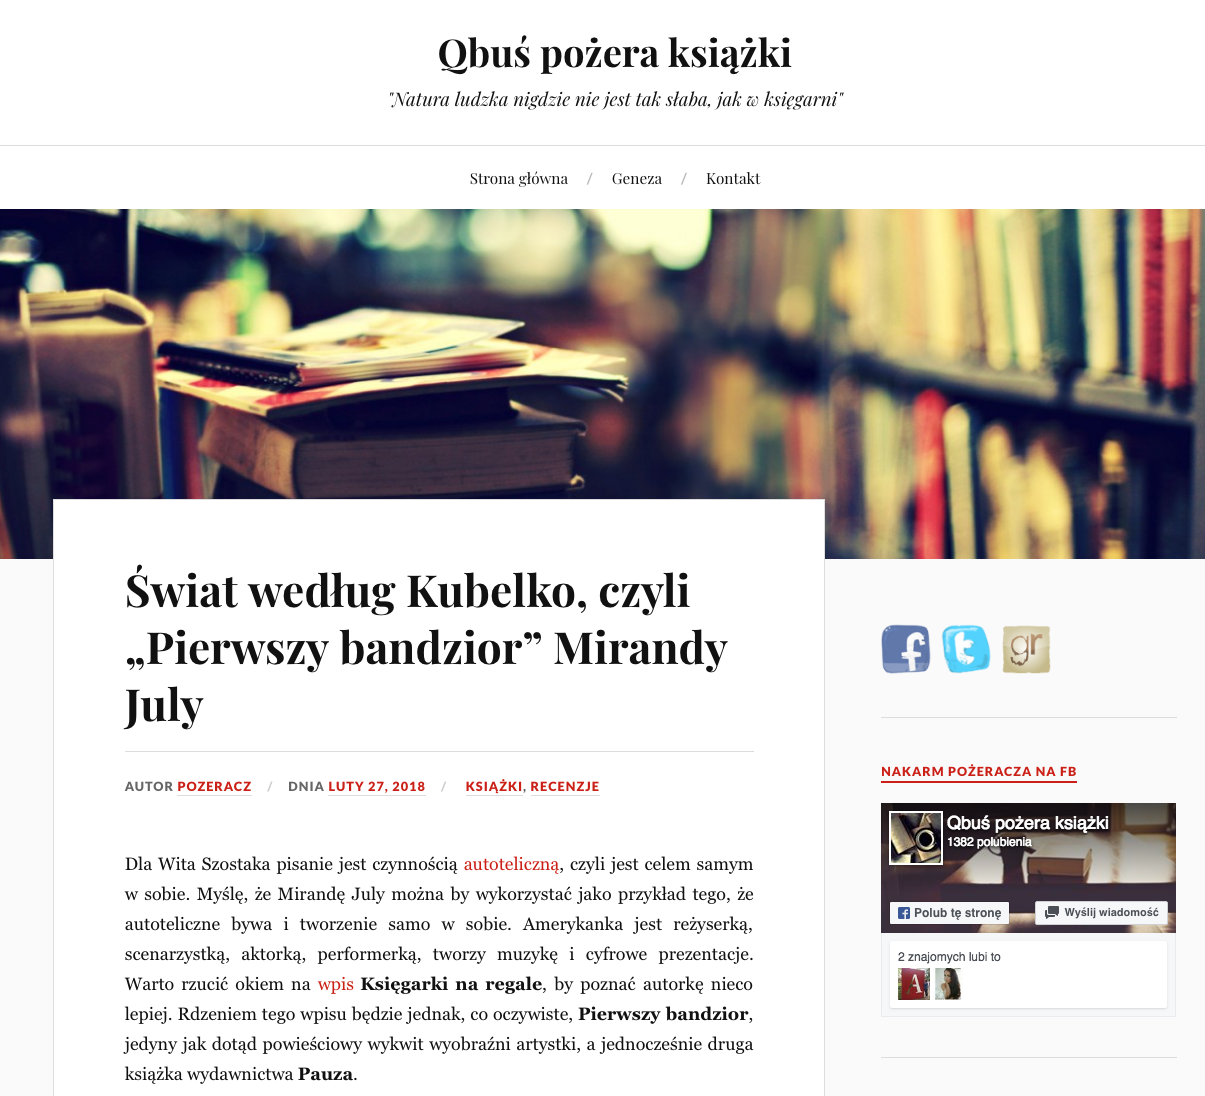 wiat według Kubelko czyli Pierwszy bandzior Mirandy July – Qbuś pożera książki